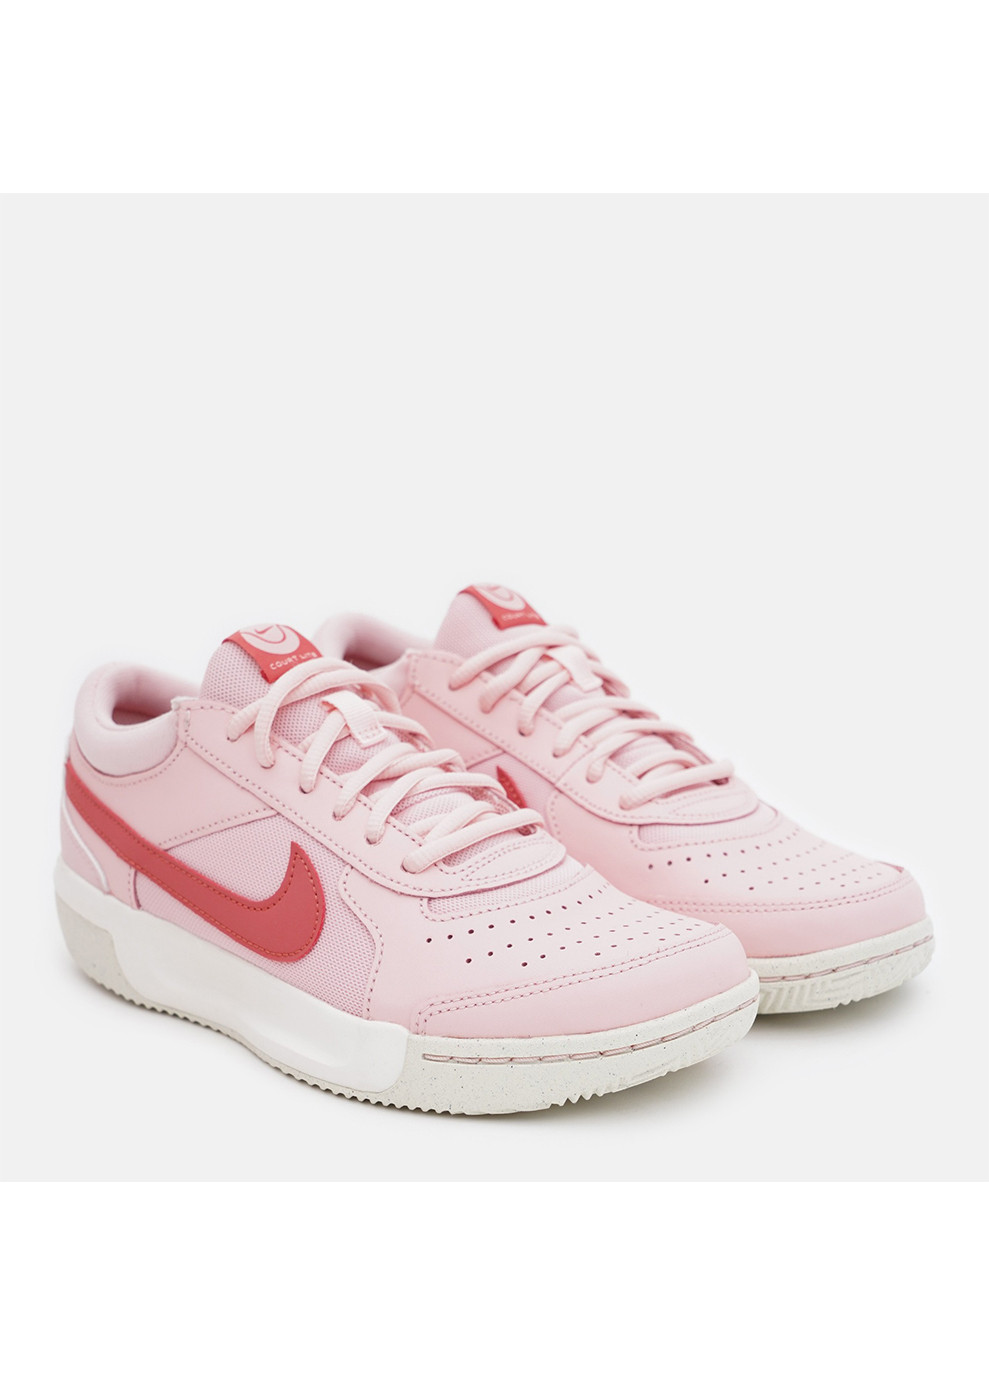 Розовые демисезонные женские кроссовки zoom court lite 3 розовый Nike